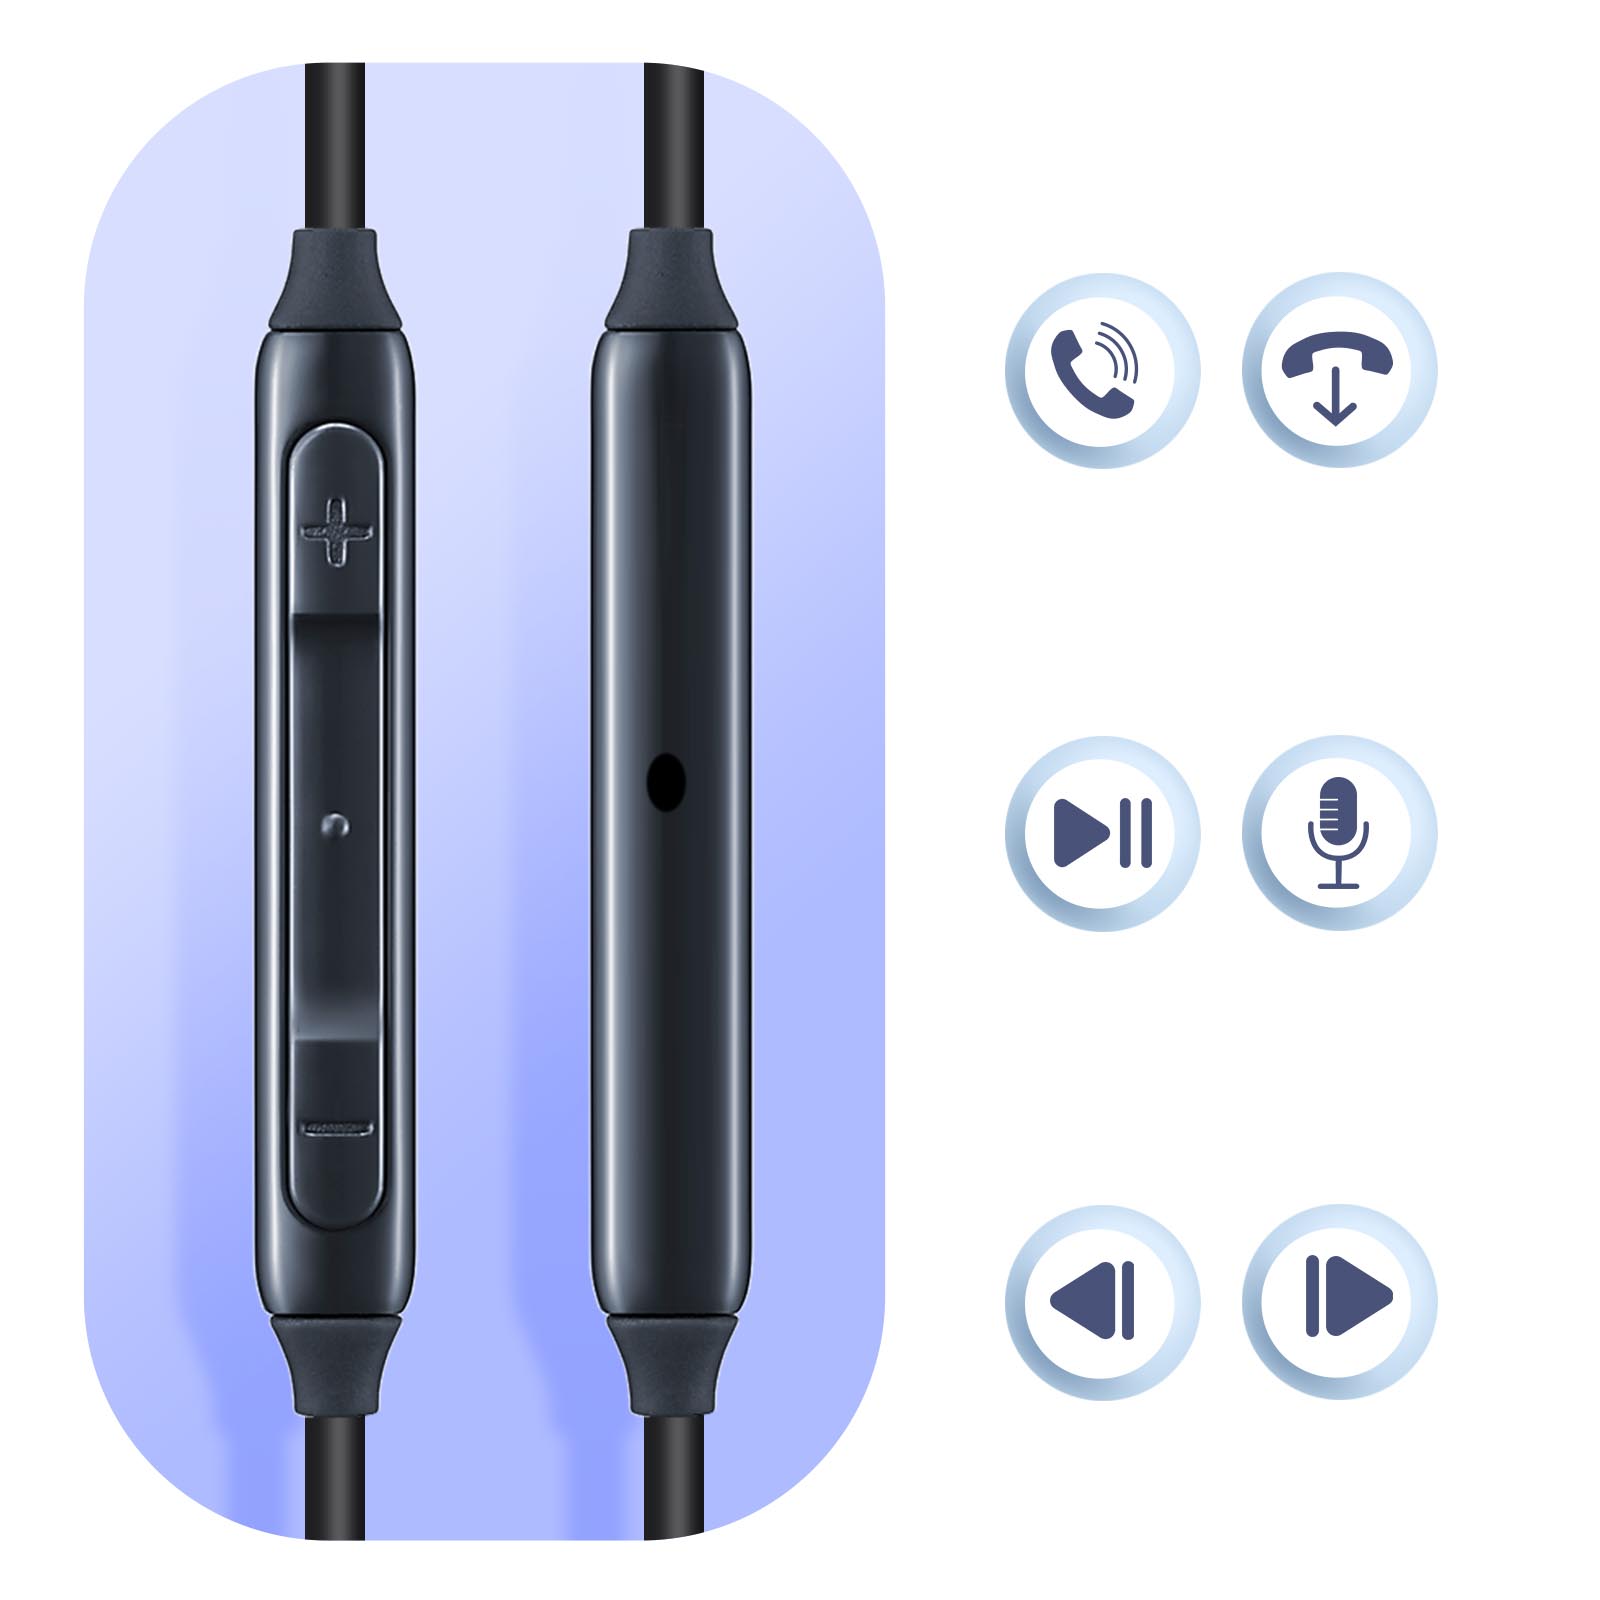 Ecouteurs Samsung IG955 Noir Kit main libre + Télécommande - Câble anti  nœud - AKG - EO IG955- 14744A